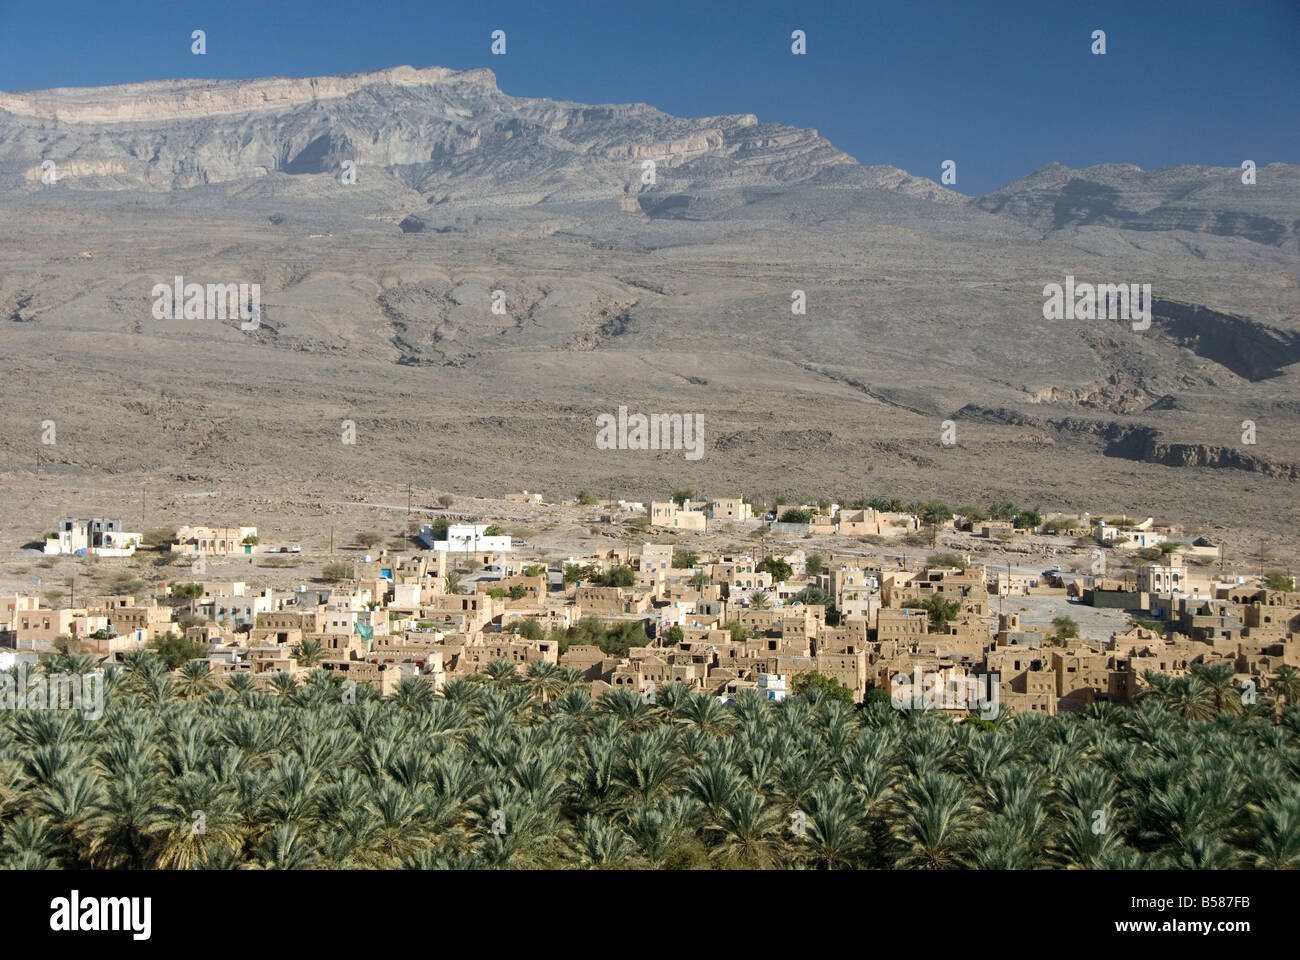 Petite ville à côté de ses terres irriguées palmery, Al Hamra, au pied de la montagne de Jabal Akhdar, dans le nord de l'Oman, Middle East Banque D'Images